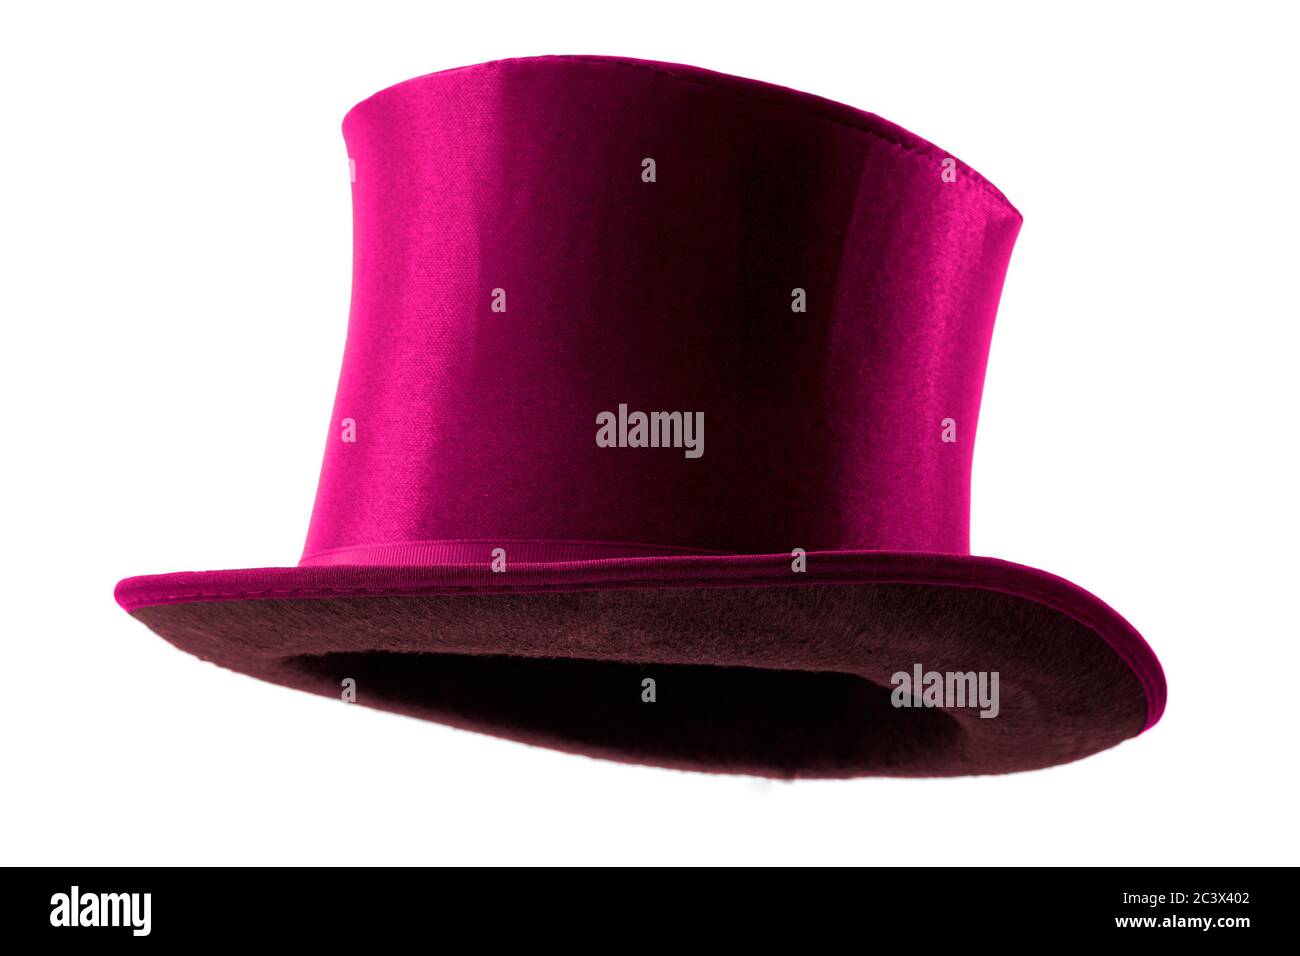 Abbigliamento elegante, stile maschile vintage e magia mostra idea concettuale con 3/4 angolo su vittoriano cappello rosa con ritaglio percorso ritagliato in mannequ fantasma Foto Stock